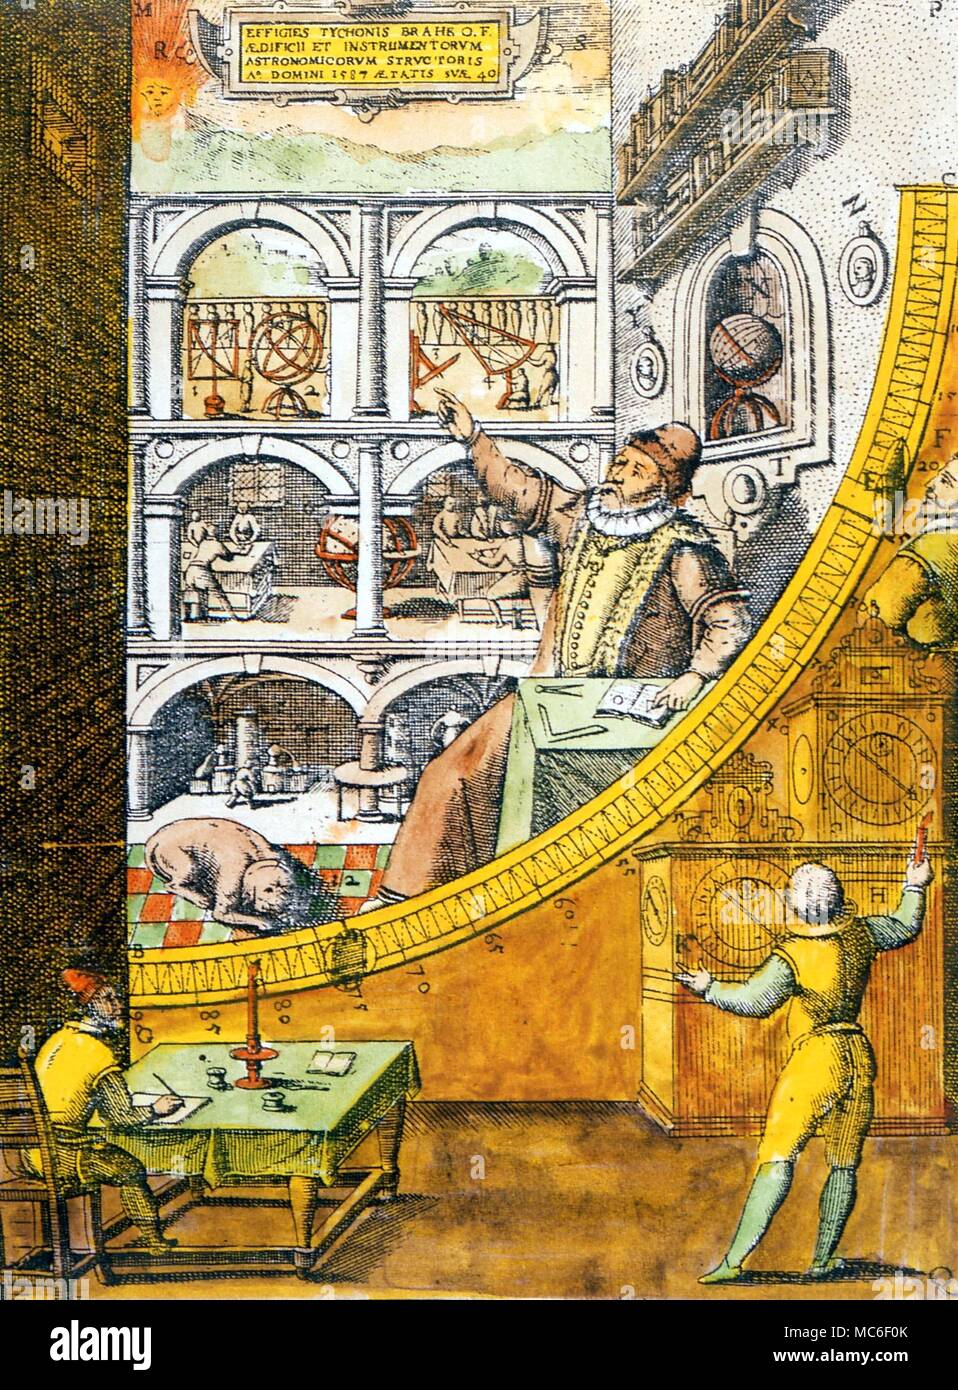 Beobachtungsstellen - Tycho Brahe die Leitung der Lesung aus seinem wandbild Quadrant, aus dem Titlepage von seiner "Astronomiae Instauratae Mechanica" von 1598 Stockfoto